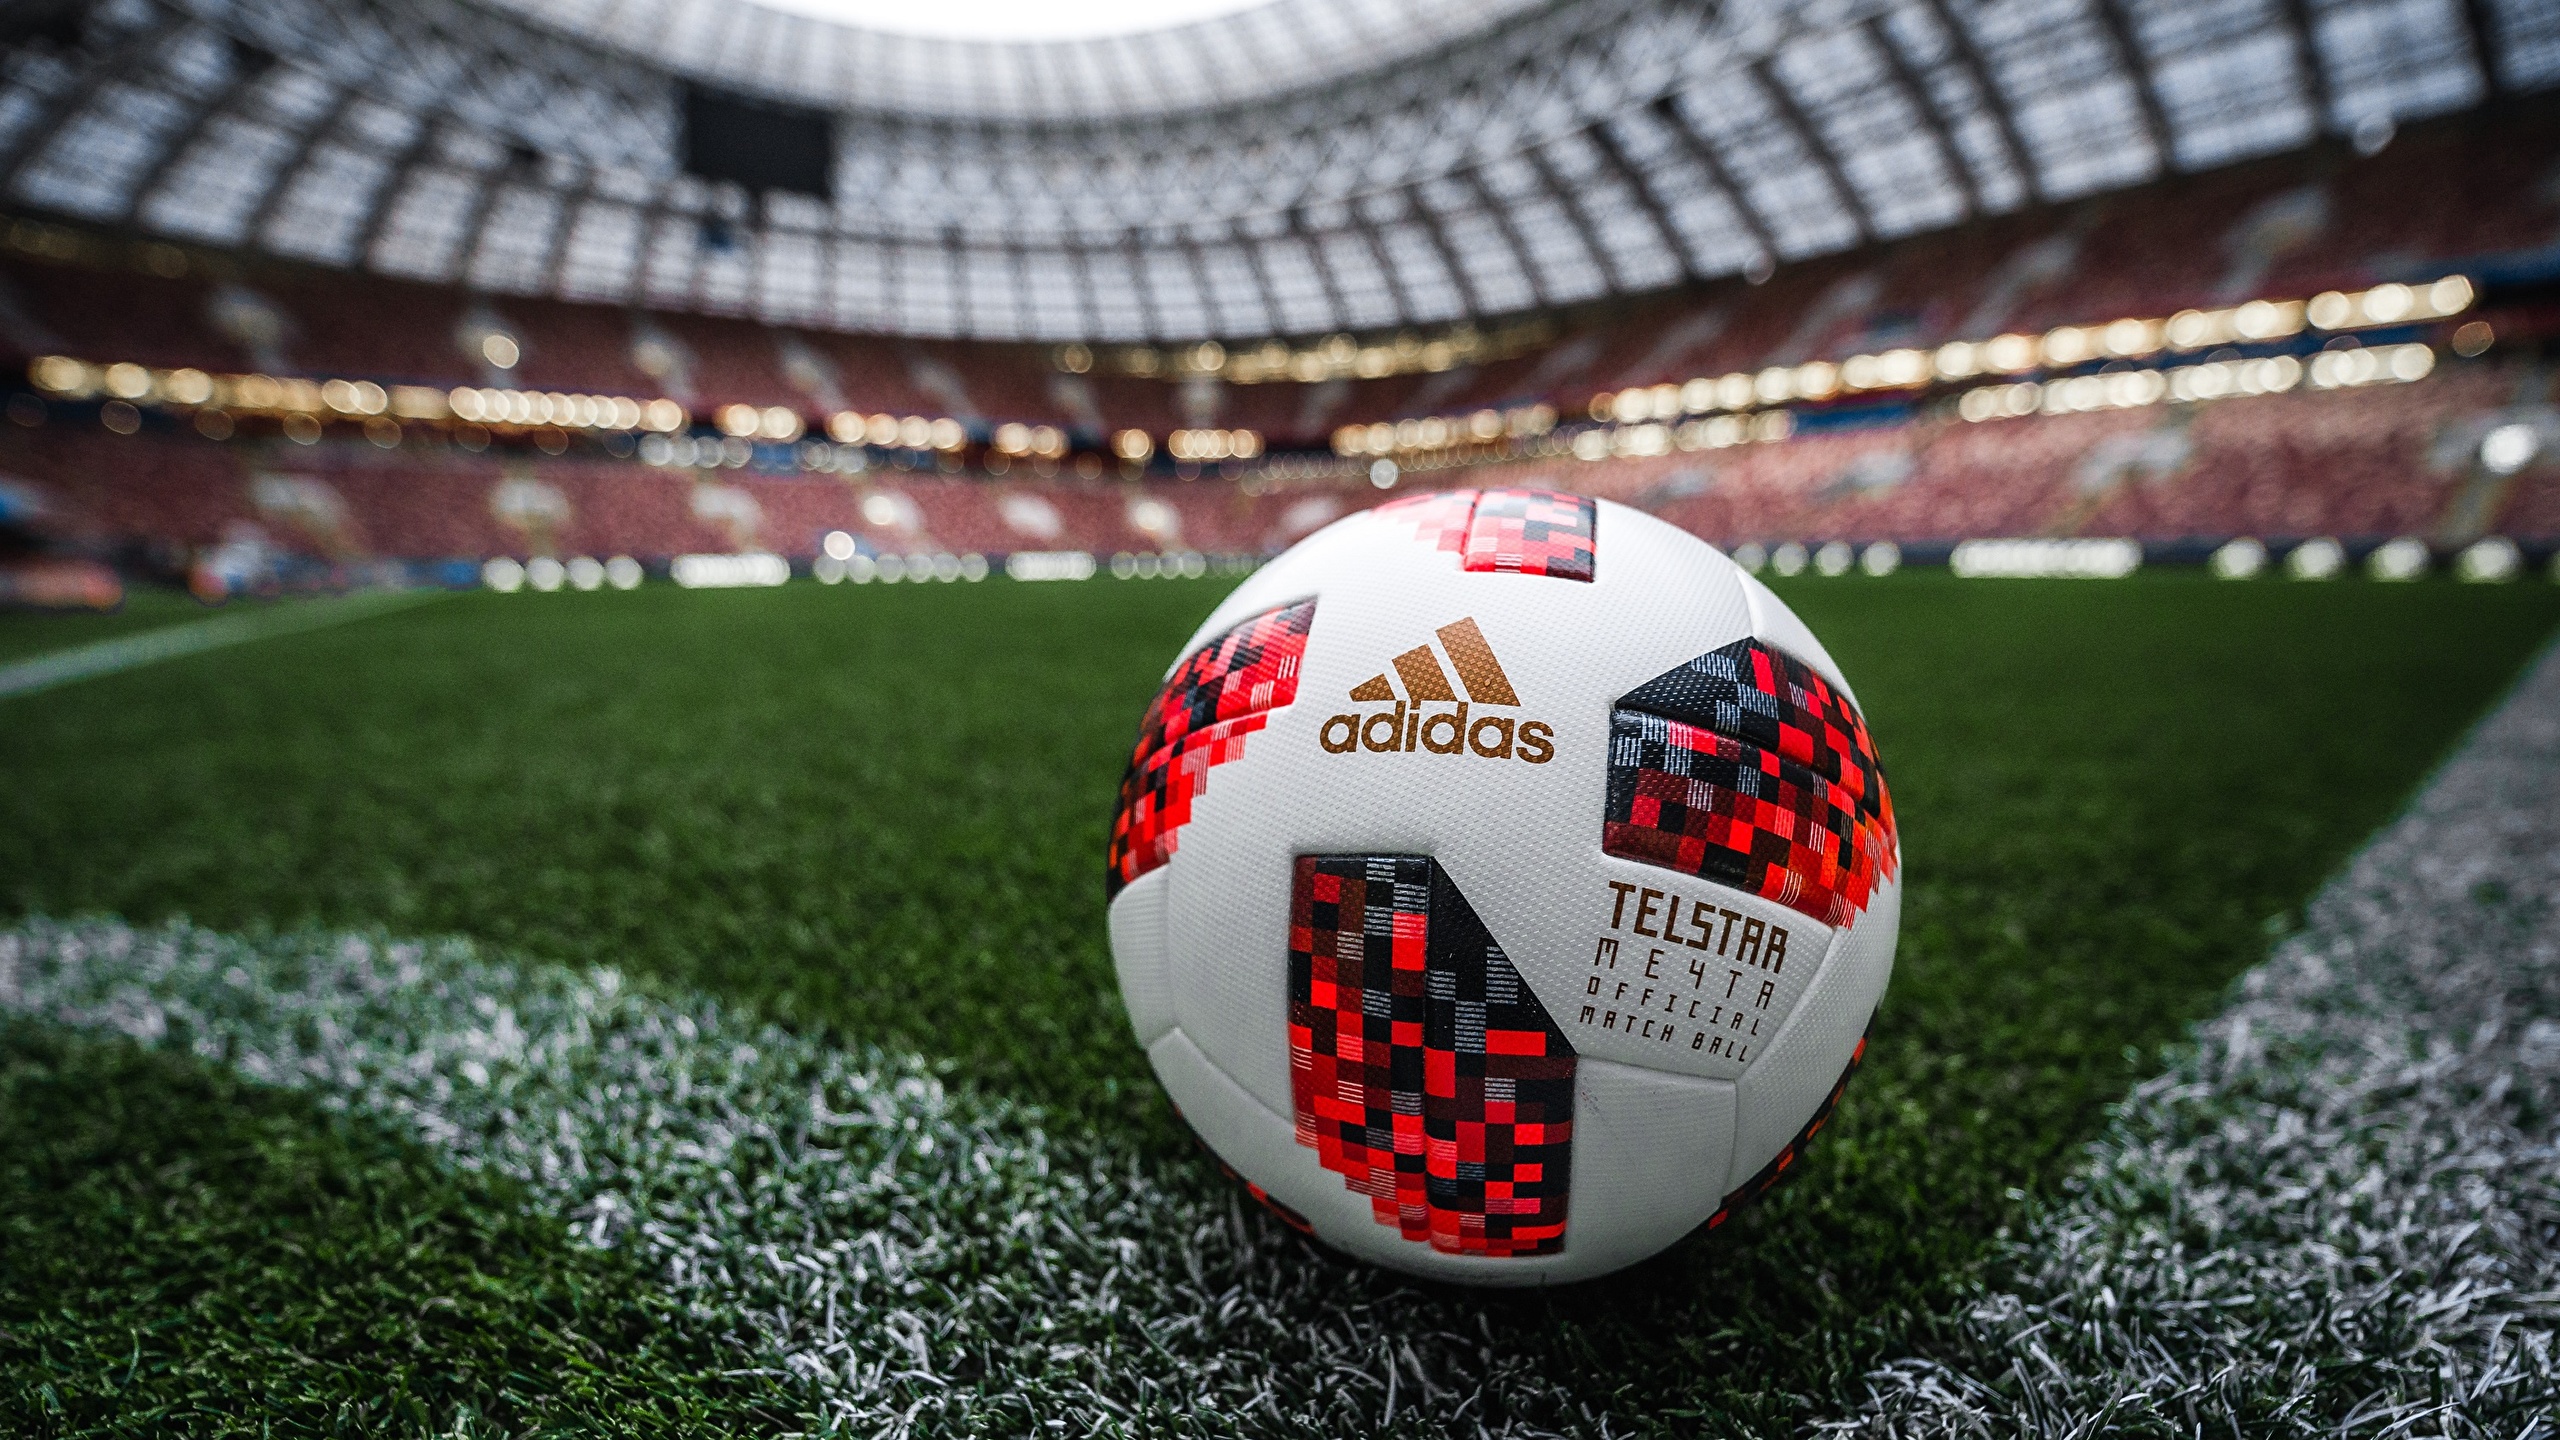 壁紙 2560x1440 サッカー Russia Fifa World Cup 18 Adidas Telstar 18 スポーツボール 芝 スタジアム スポーツ ダウンロード 写真